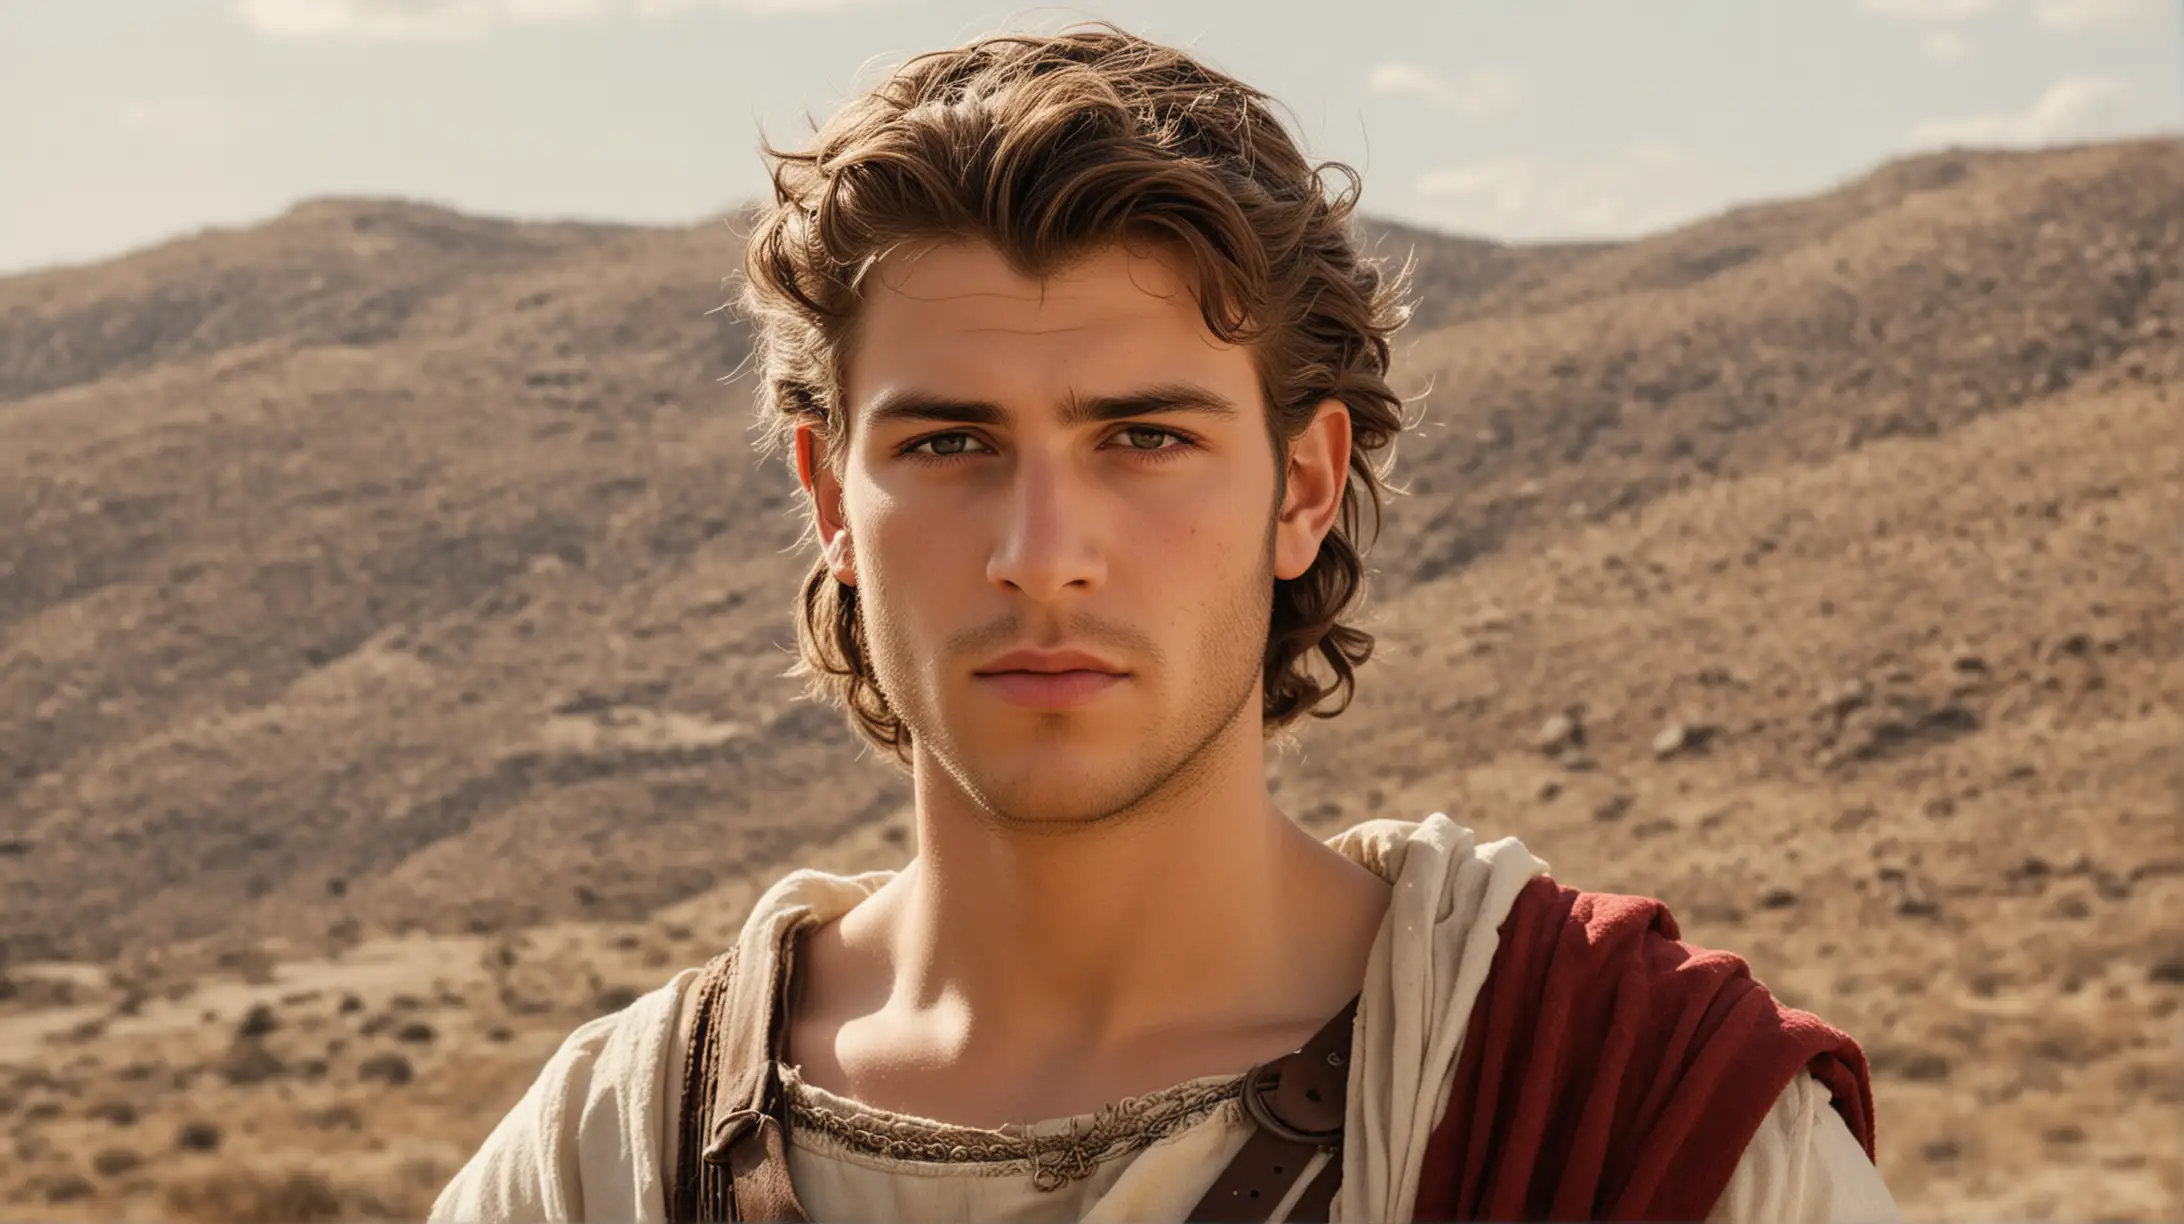 Handsome Young King David in Desert Landscape Biblical Era Portrait